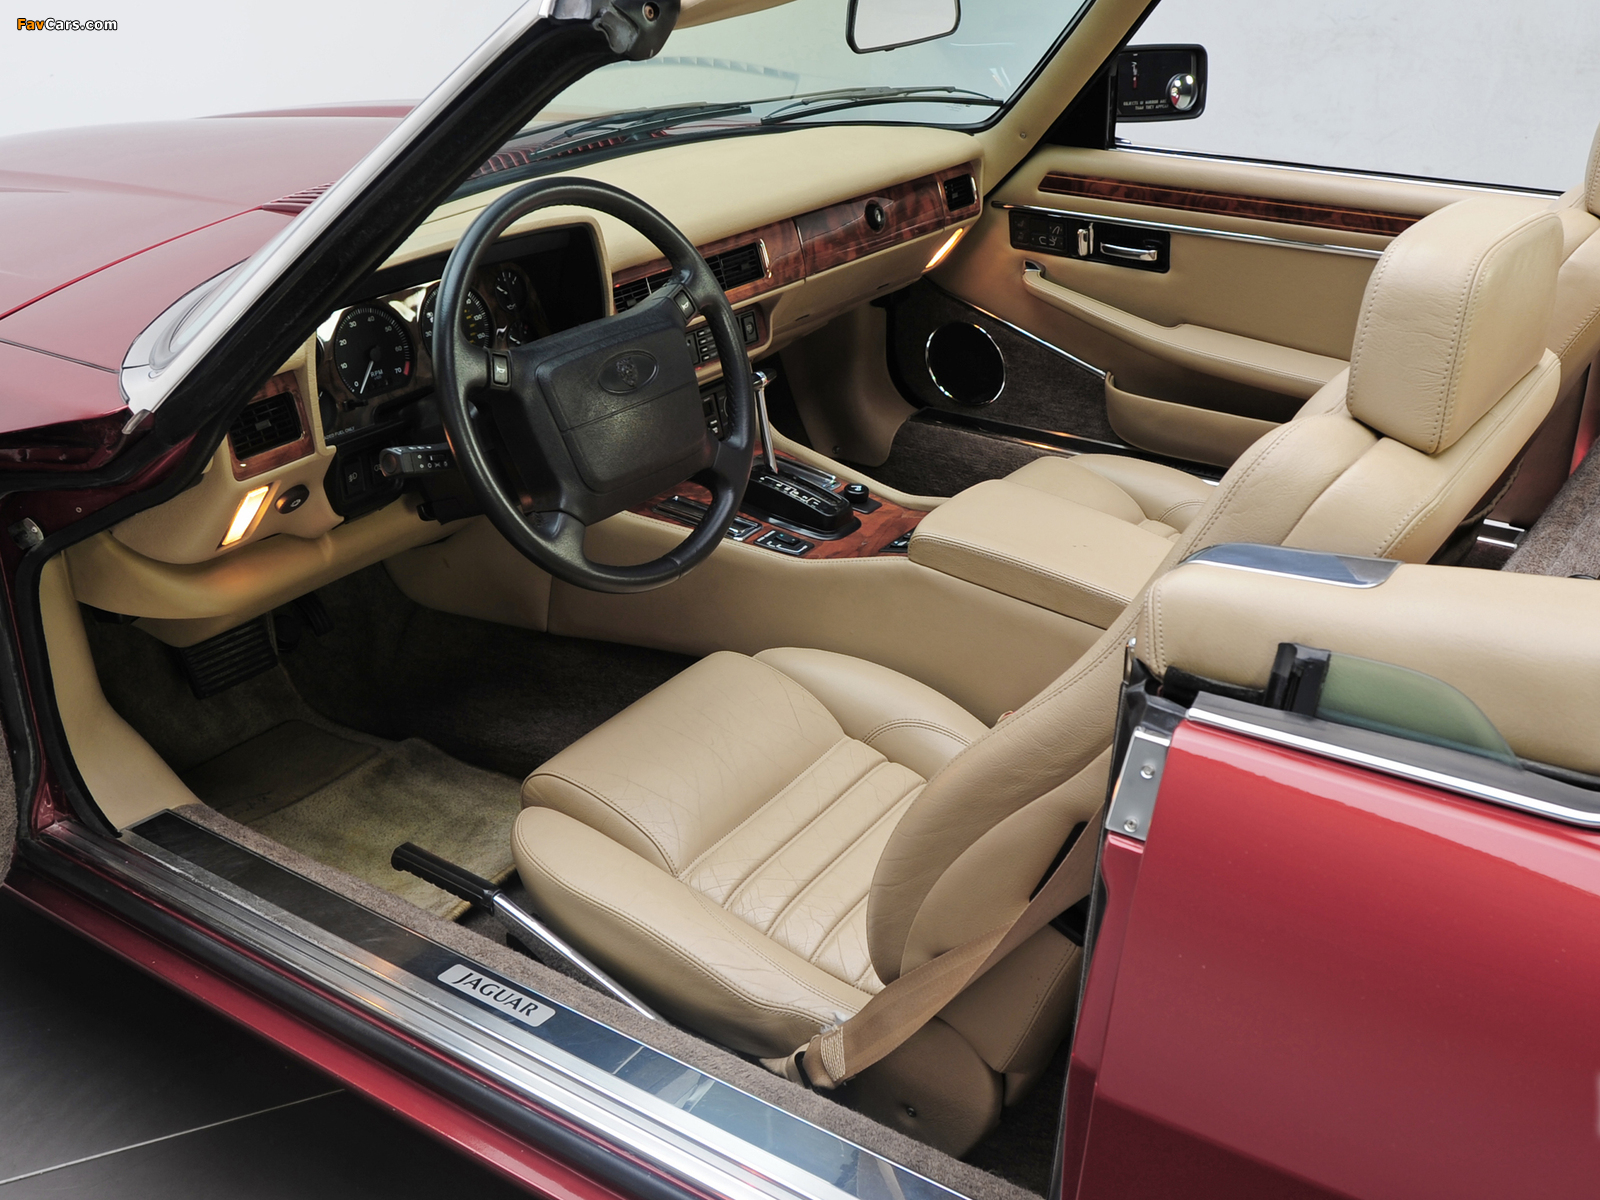 Jaguar XJS Convertible 1991–96 photos (1600 x 1200)